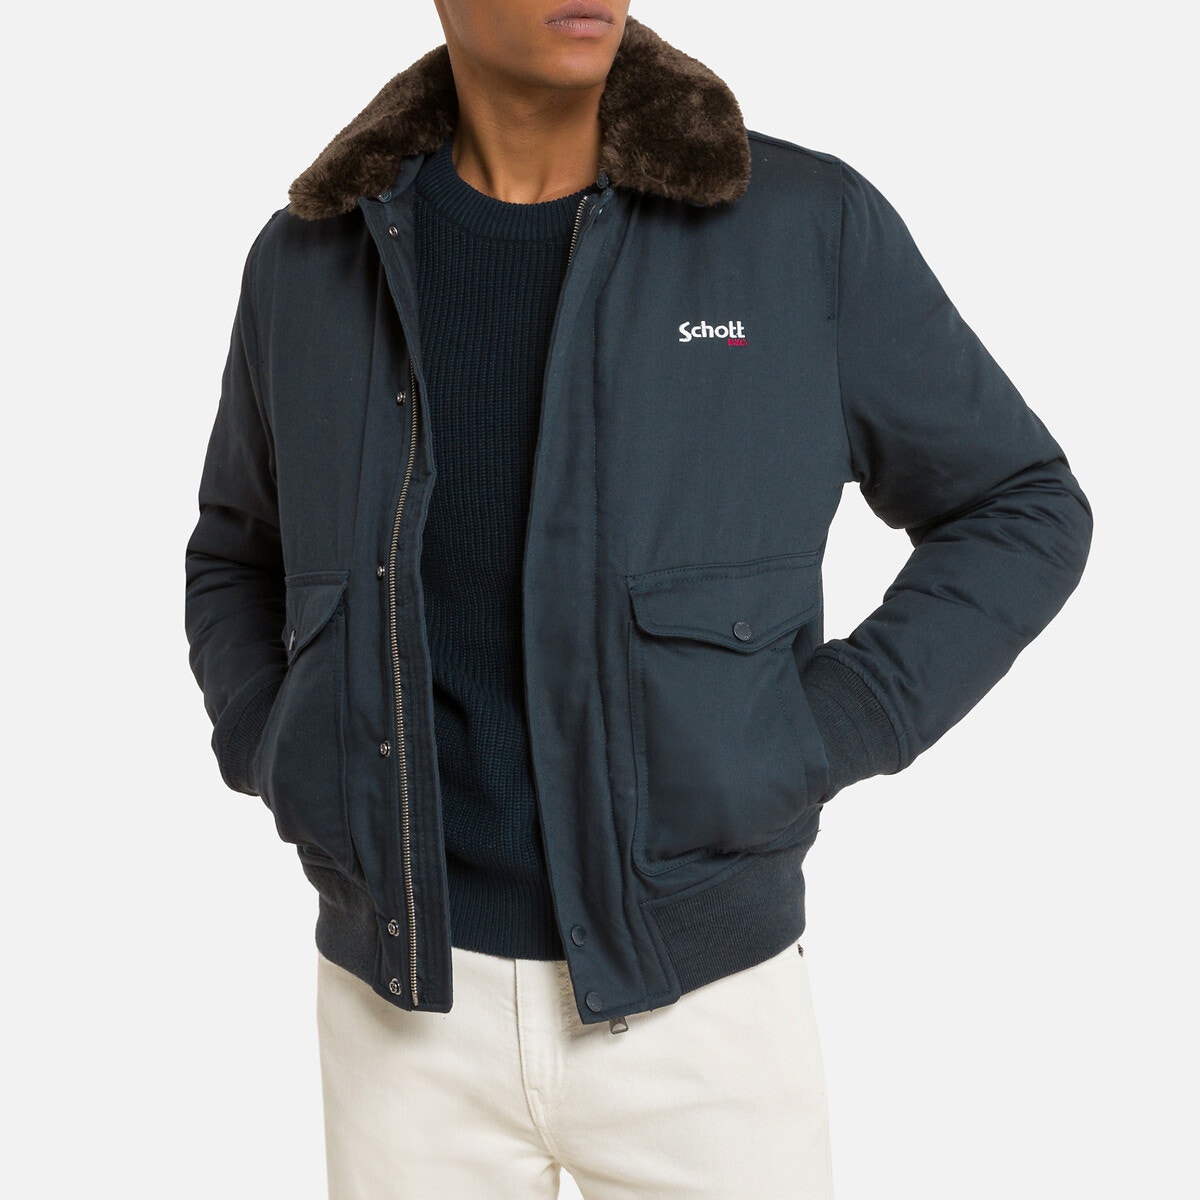 Κοντό μπουφάν με φερμουάρ και γιακά από sherpa, Top Gun 20 D